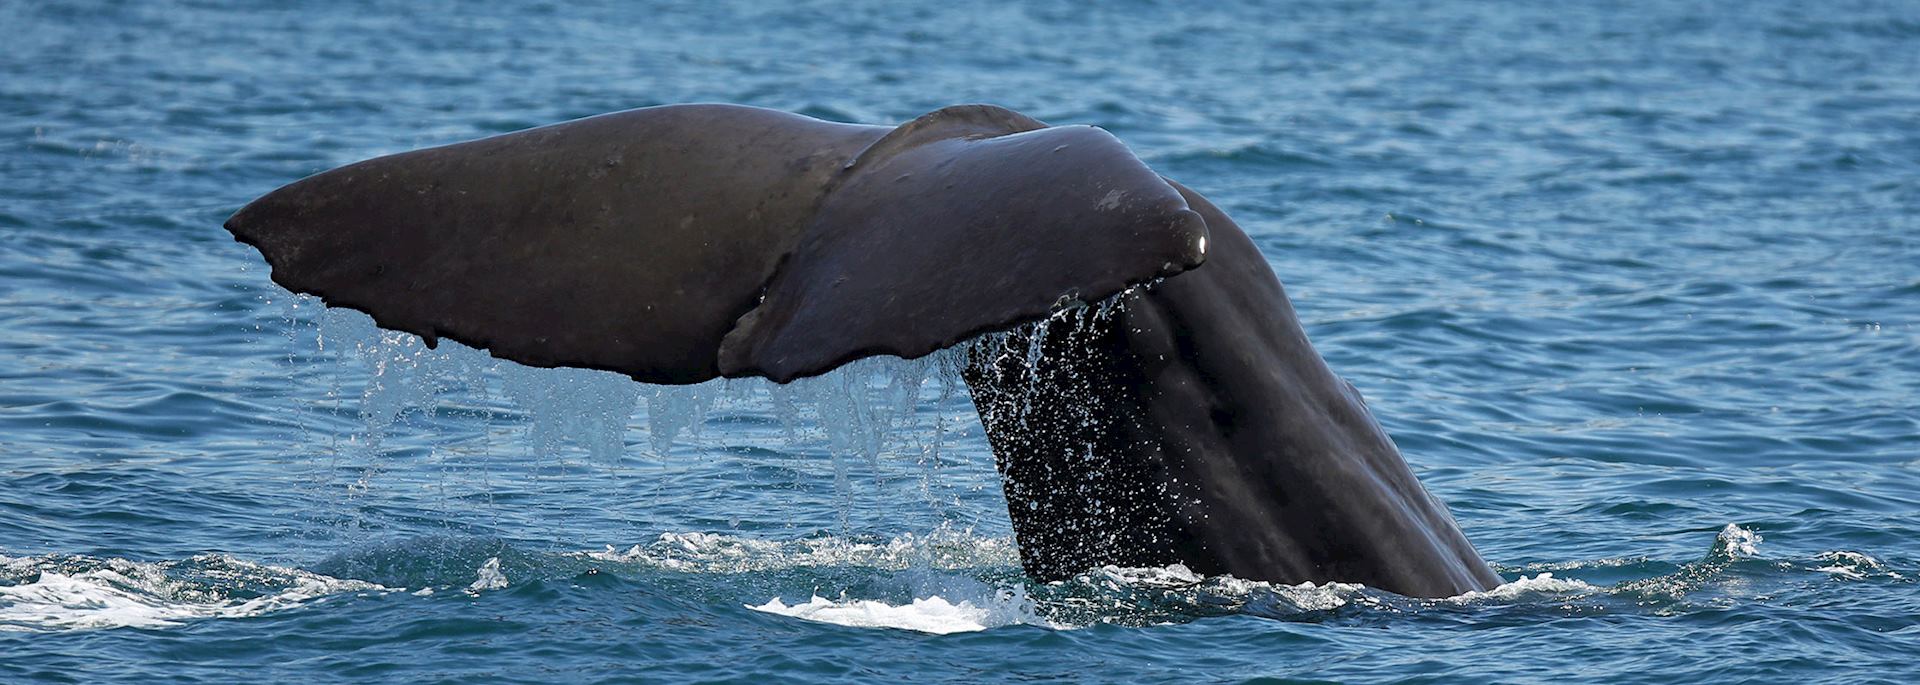 Sperm whale, Kaikoura